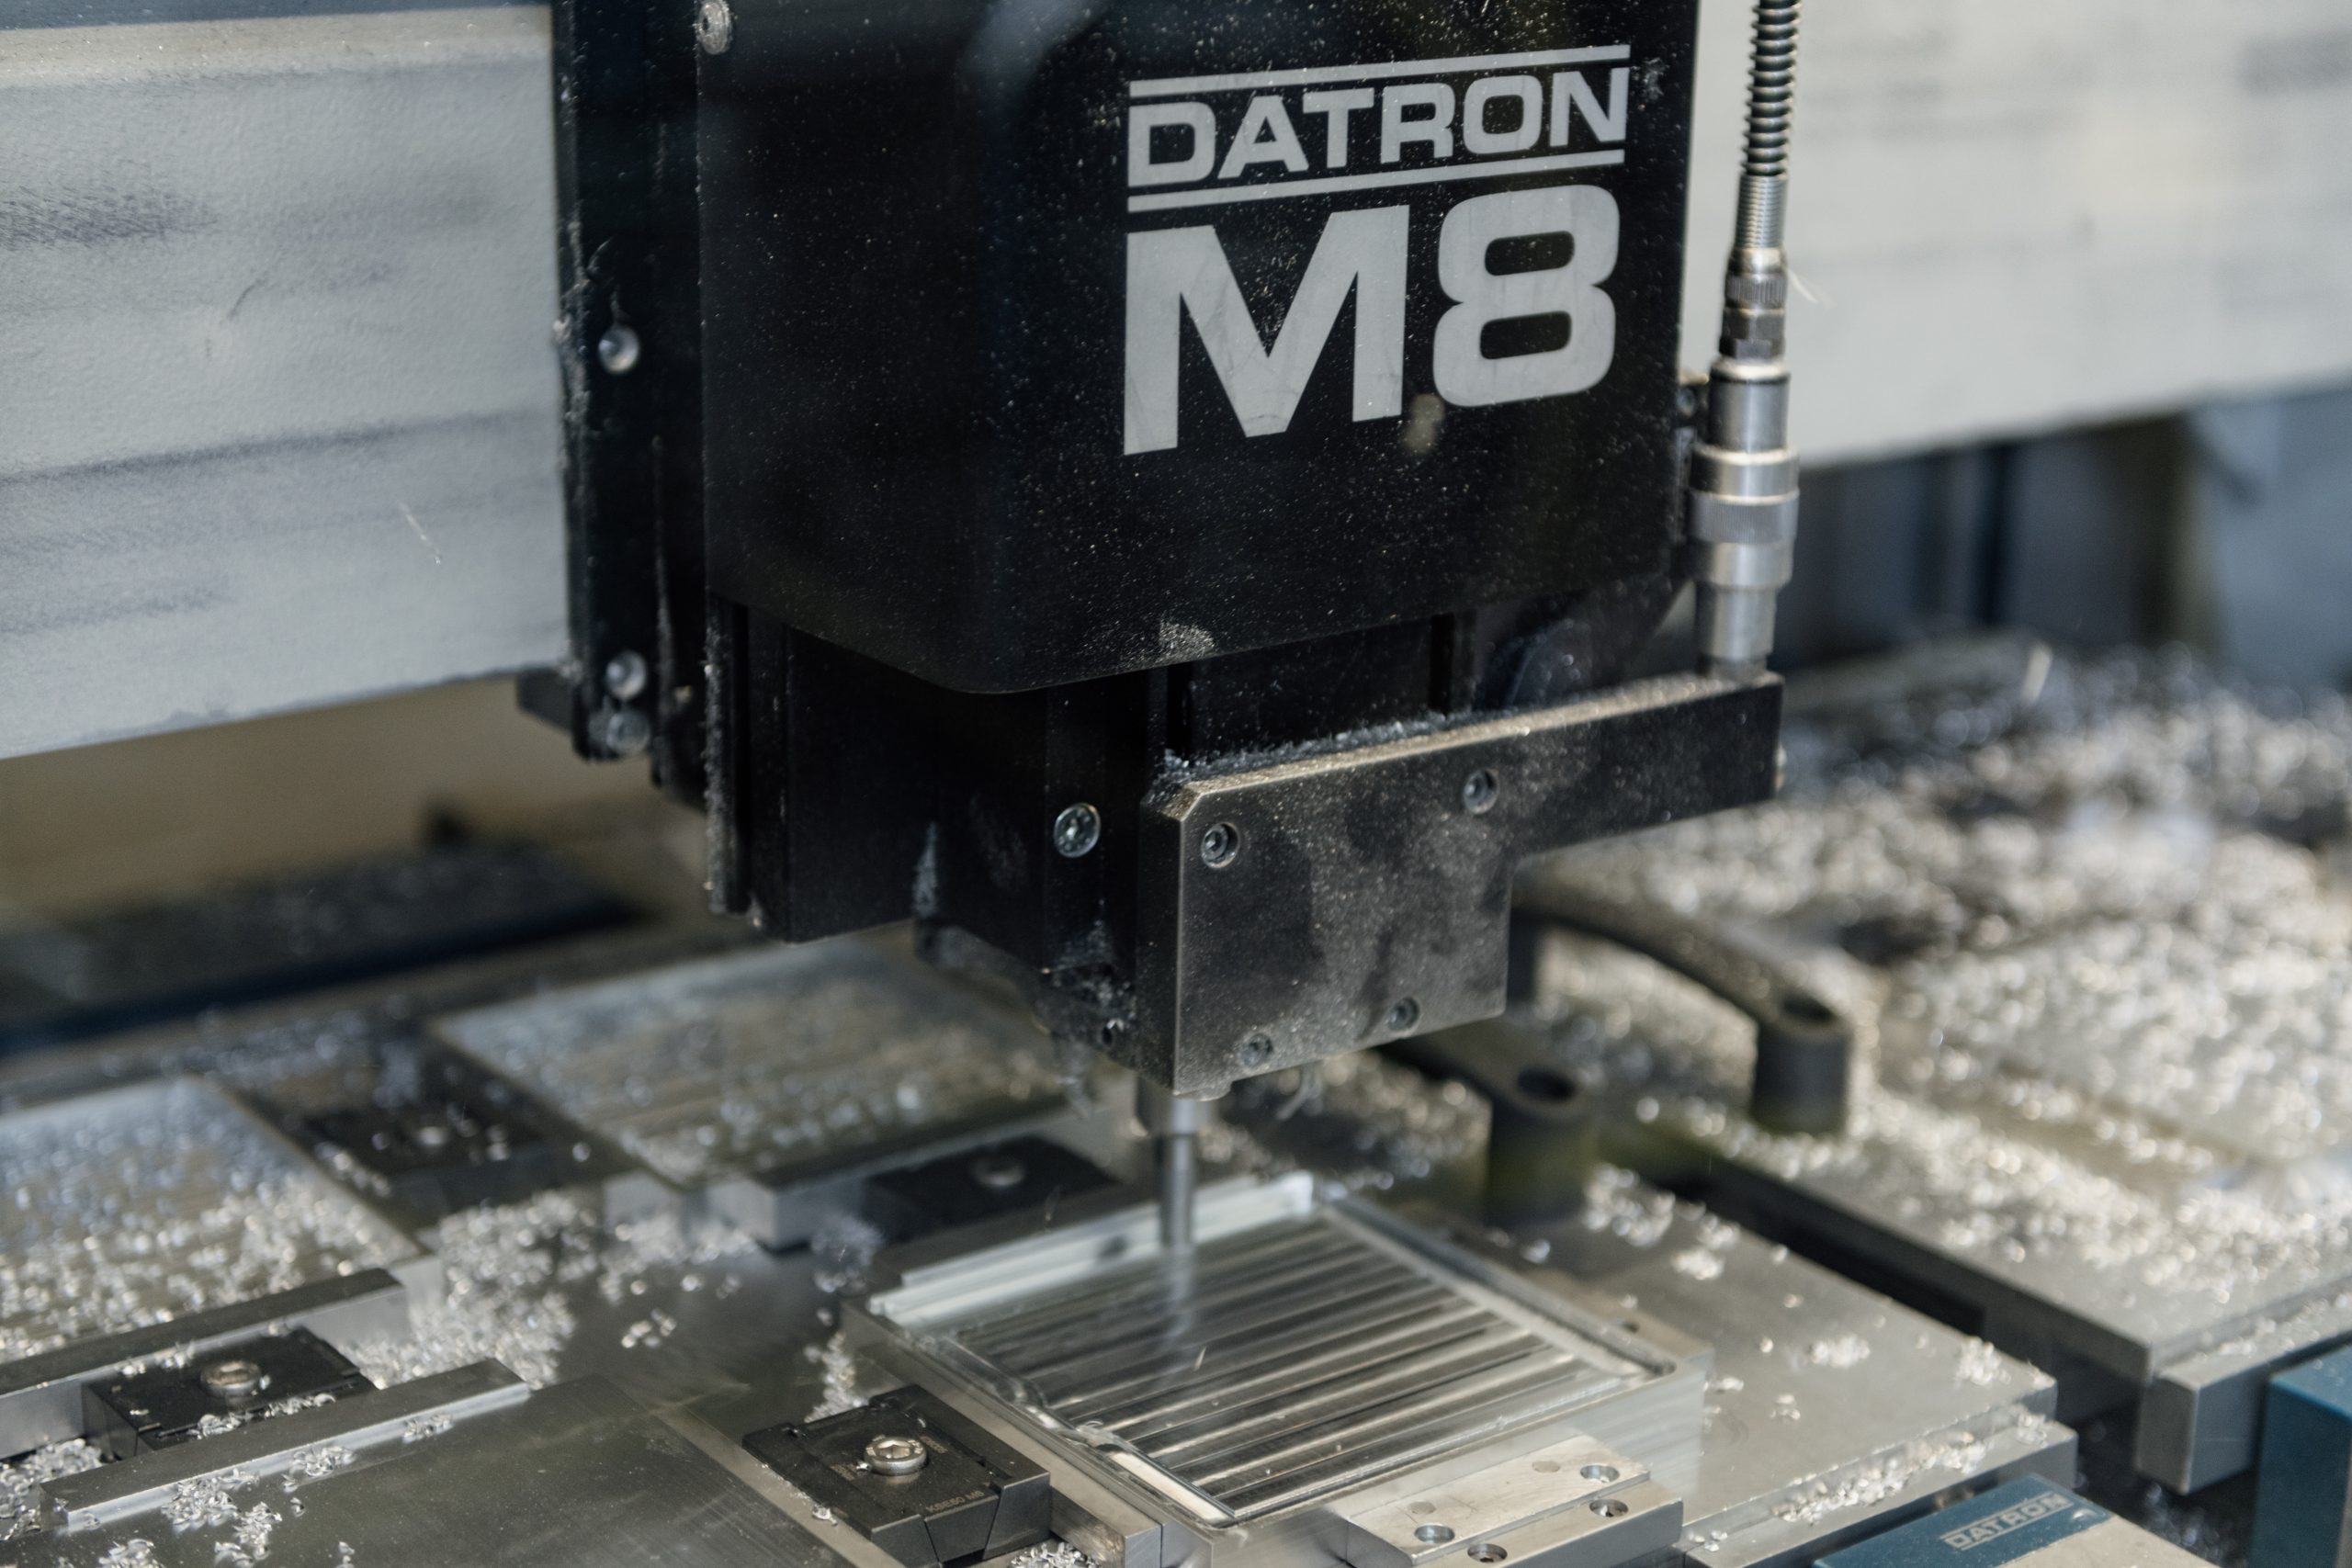 Fräskopf einer Datron CNC-Fräsmaschine mit Aufschrift "DATRON M8" bei der Bearbeitung eines Aluminium-Blocks.